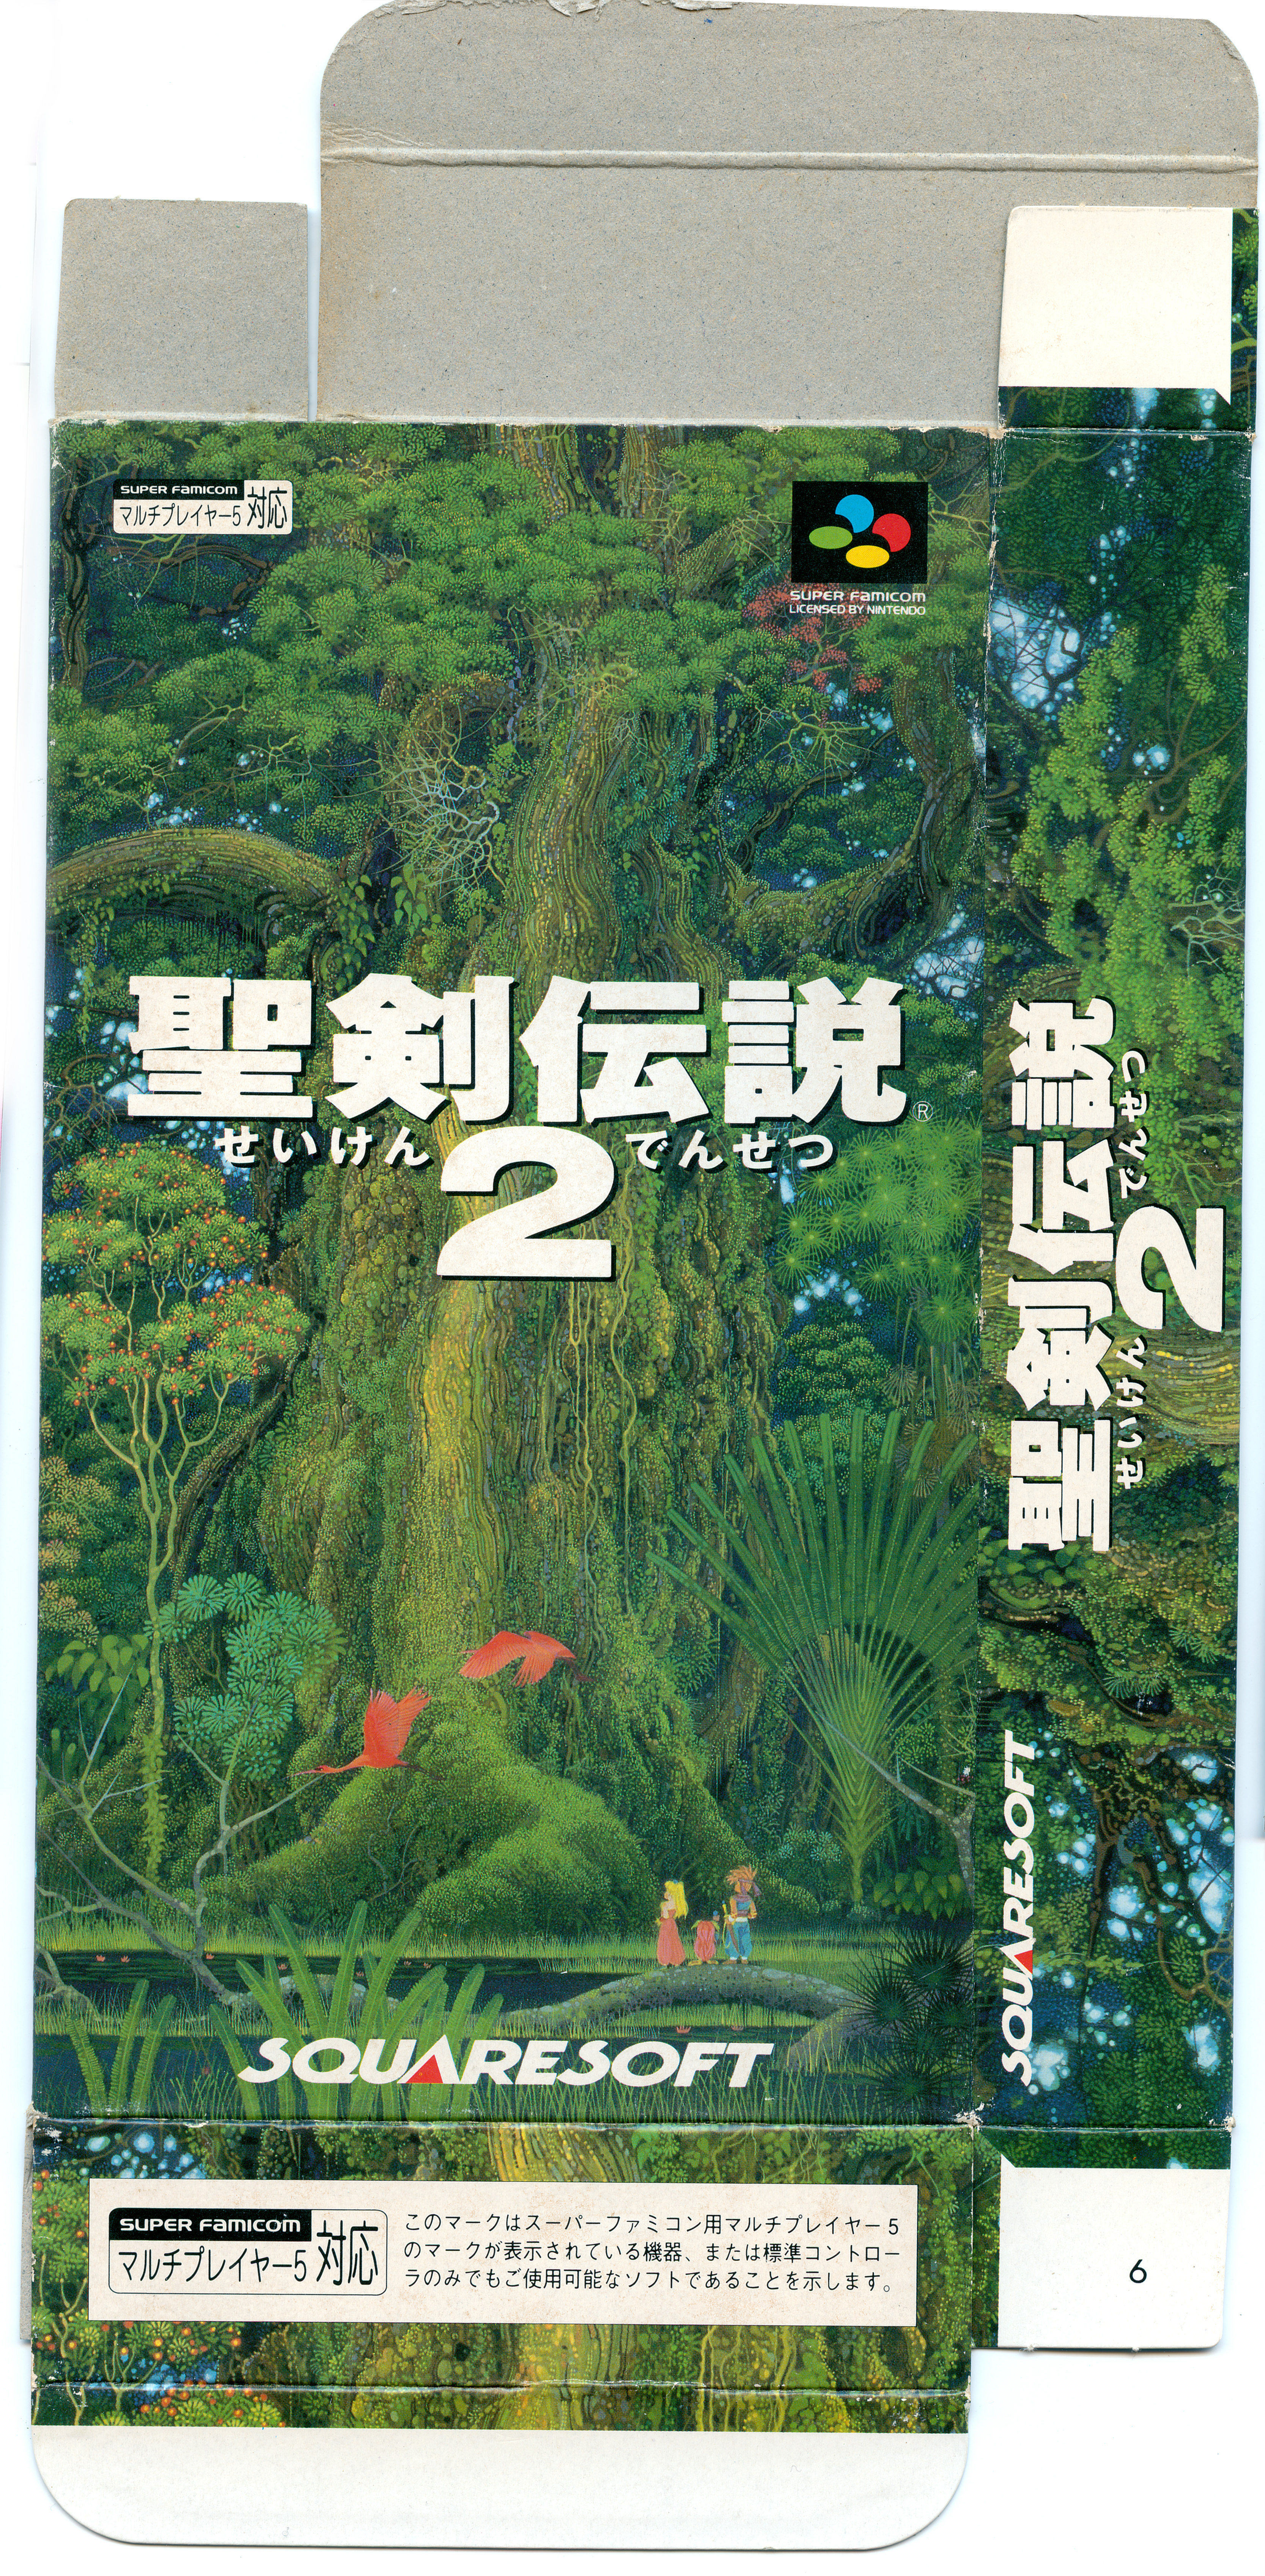 Code from JP 3-7 DaysSeiken Densetsu 2 Secret of Mana Guide & Art Book 